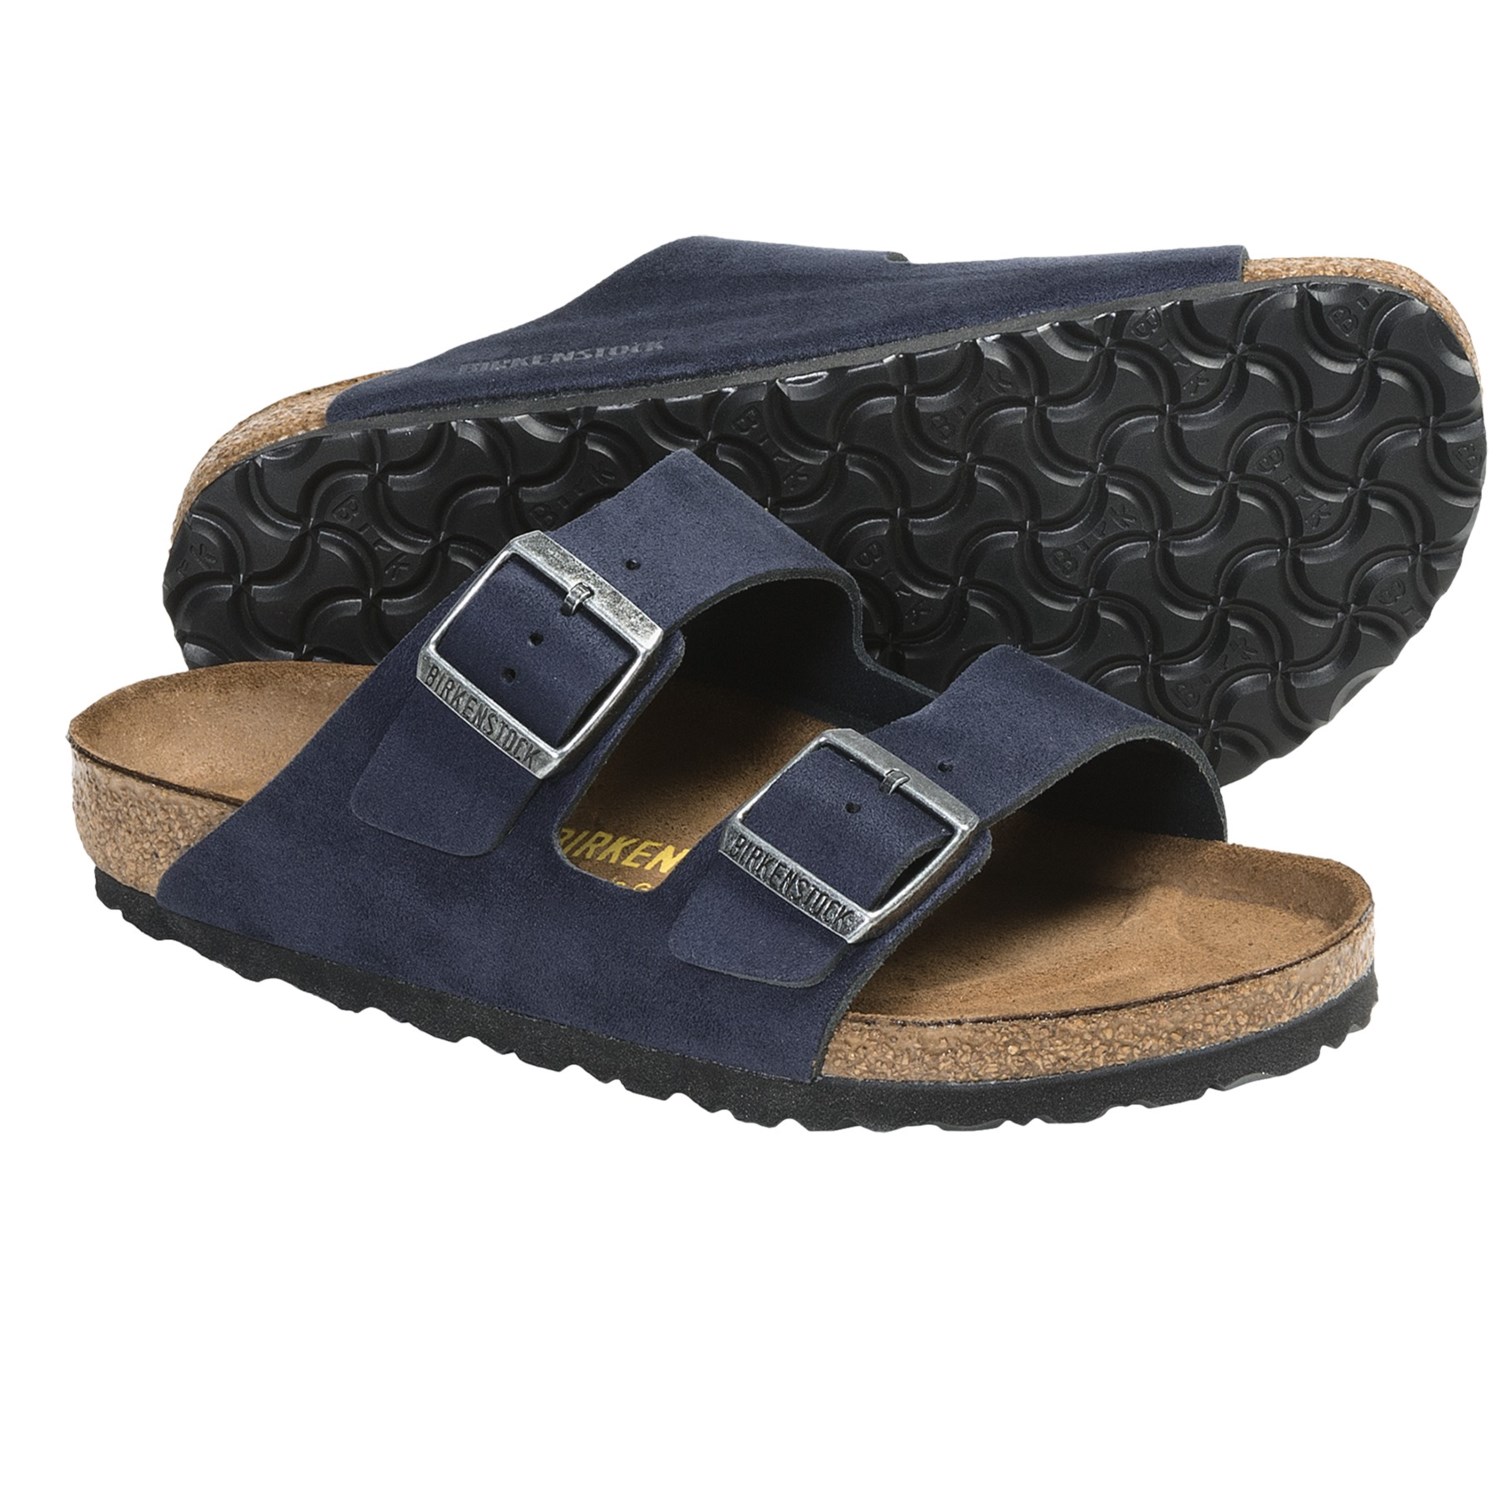 Birkenstock Arizona Sandals - Leather (For Men and Women) in Navy ...